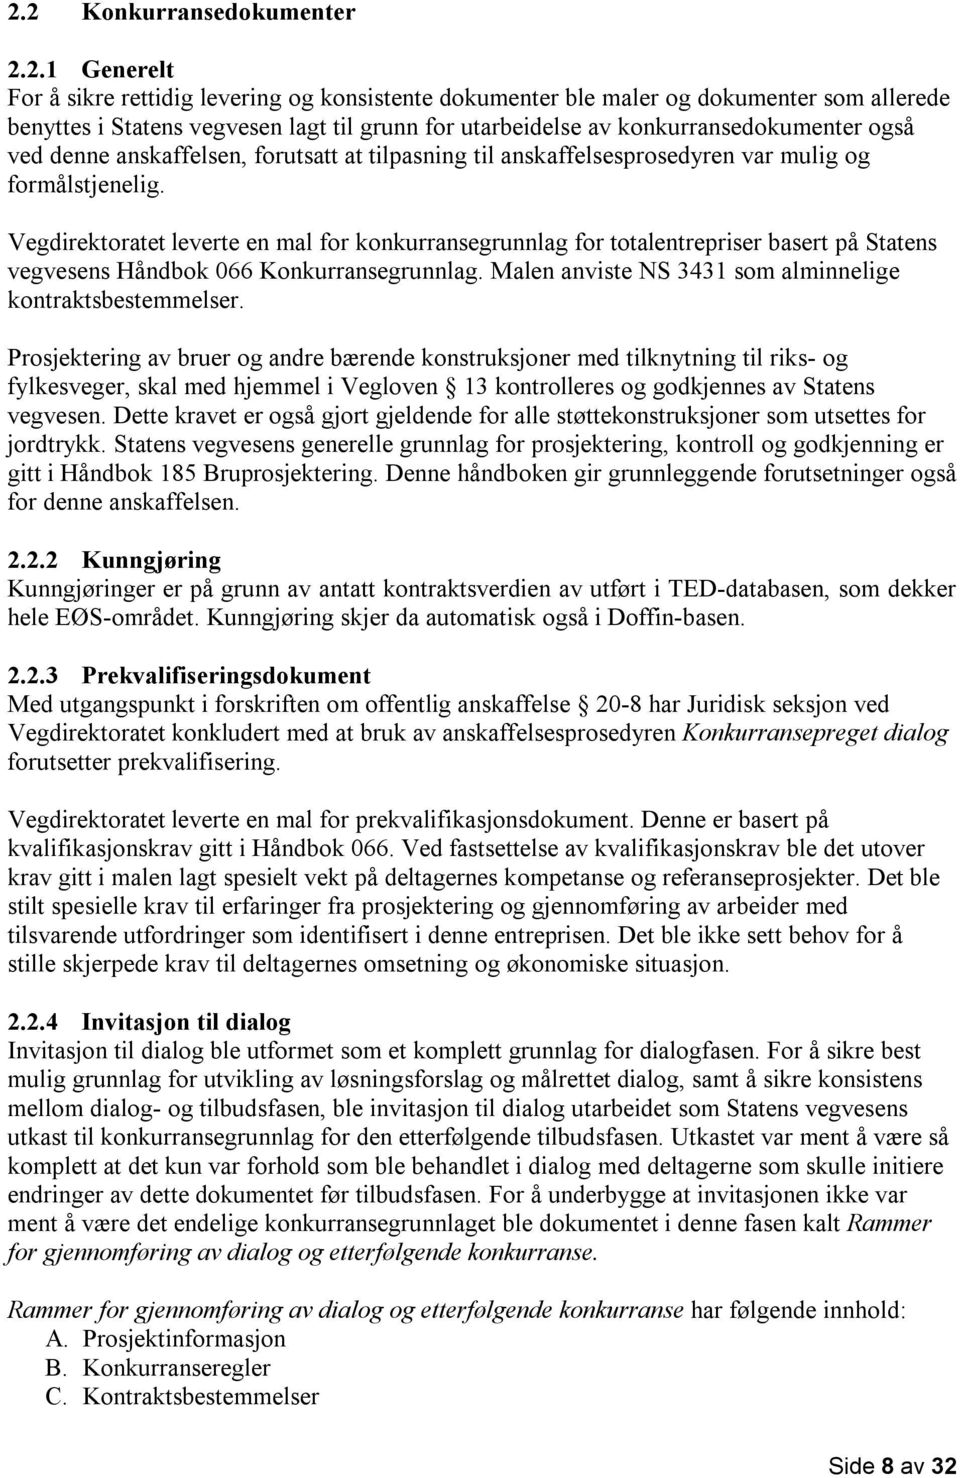 Vegdirektoratet leverte en mal for konkurransegrunnlag for totalentrepriser basert på Statens vegvesens Håndbok 066 Konkurransegrunnlag. Malen anviste NS 3431 som alminnelige kontraktsbestemmelser.